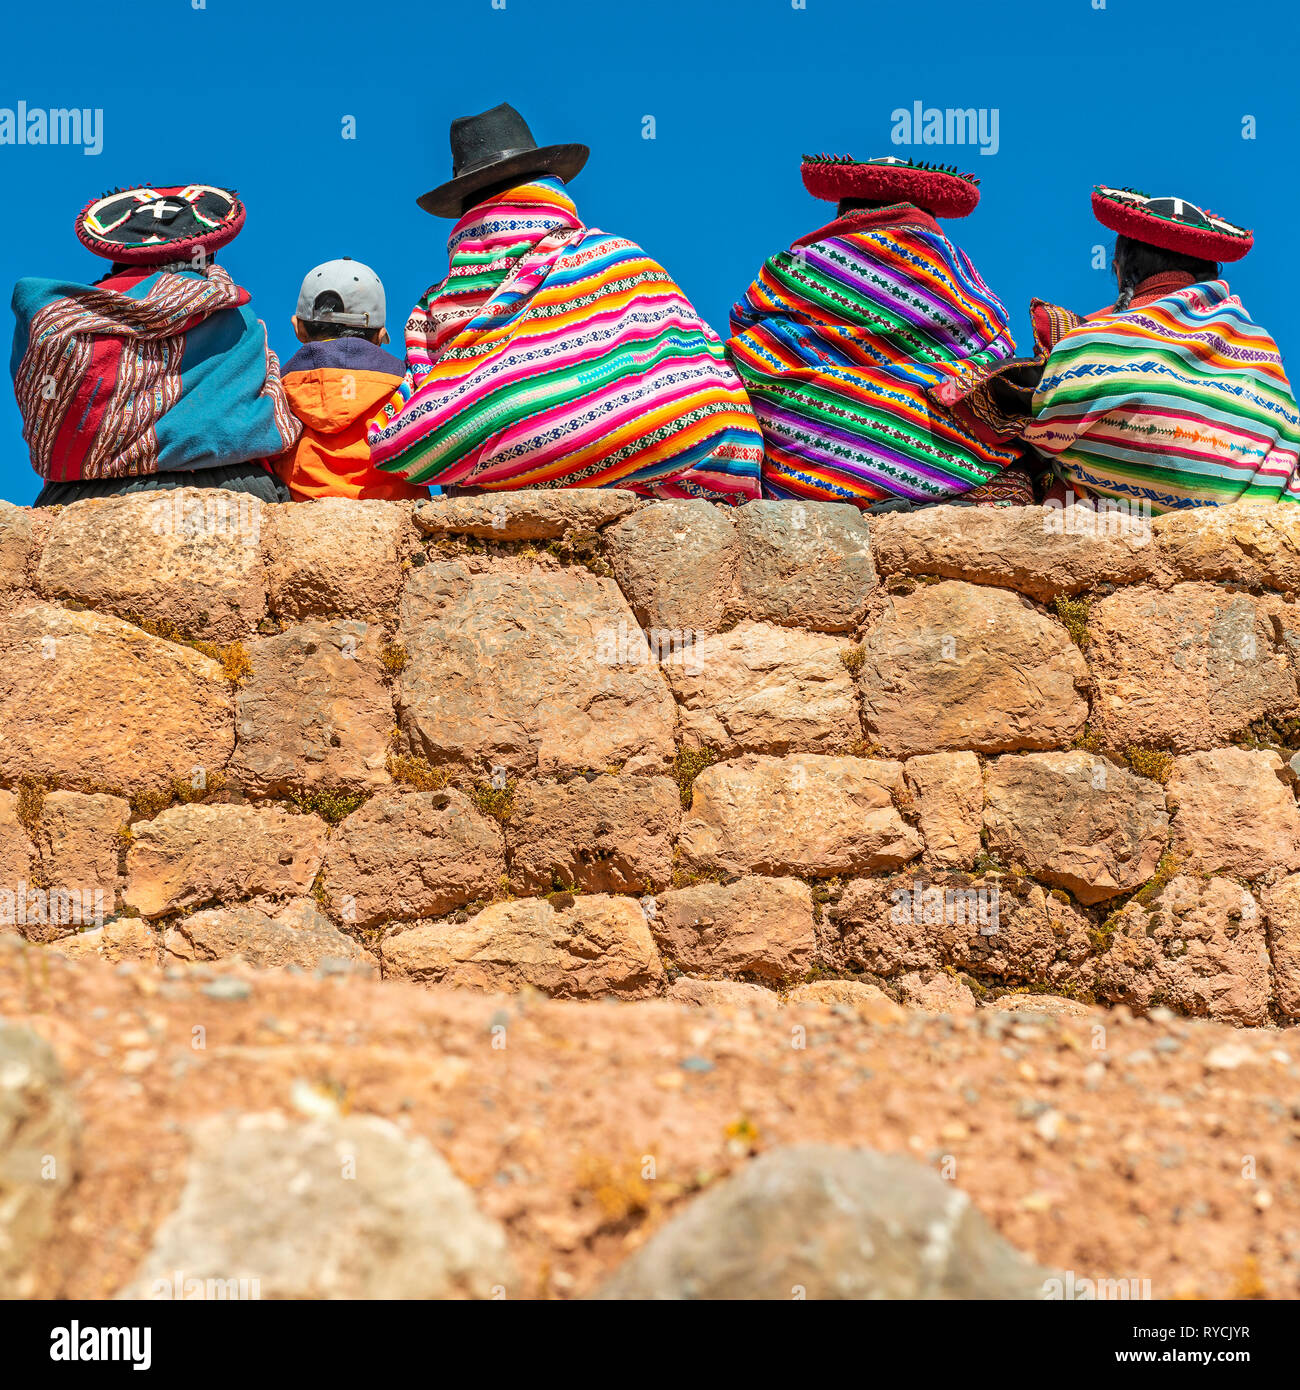 Photographie de la place des peuples quechua mesdames en costume traditionnel avec un jeune garçon assis sur un mur Inca dans la Vallée Sacrée des Incas, au Pérou. Banque D'Images